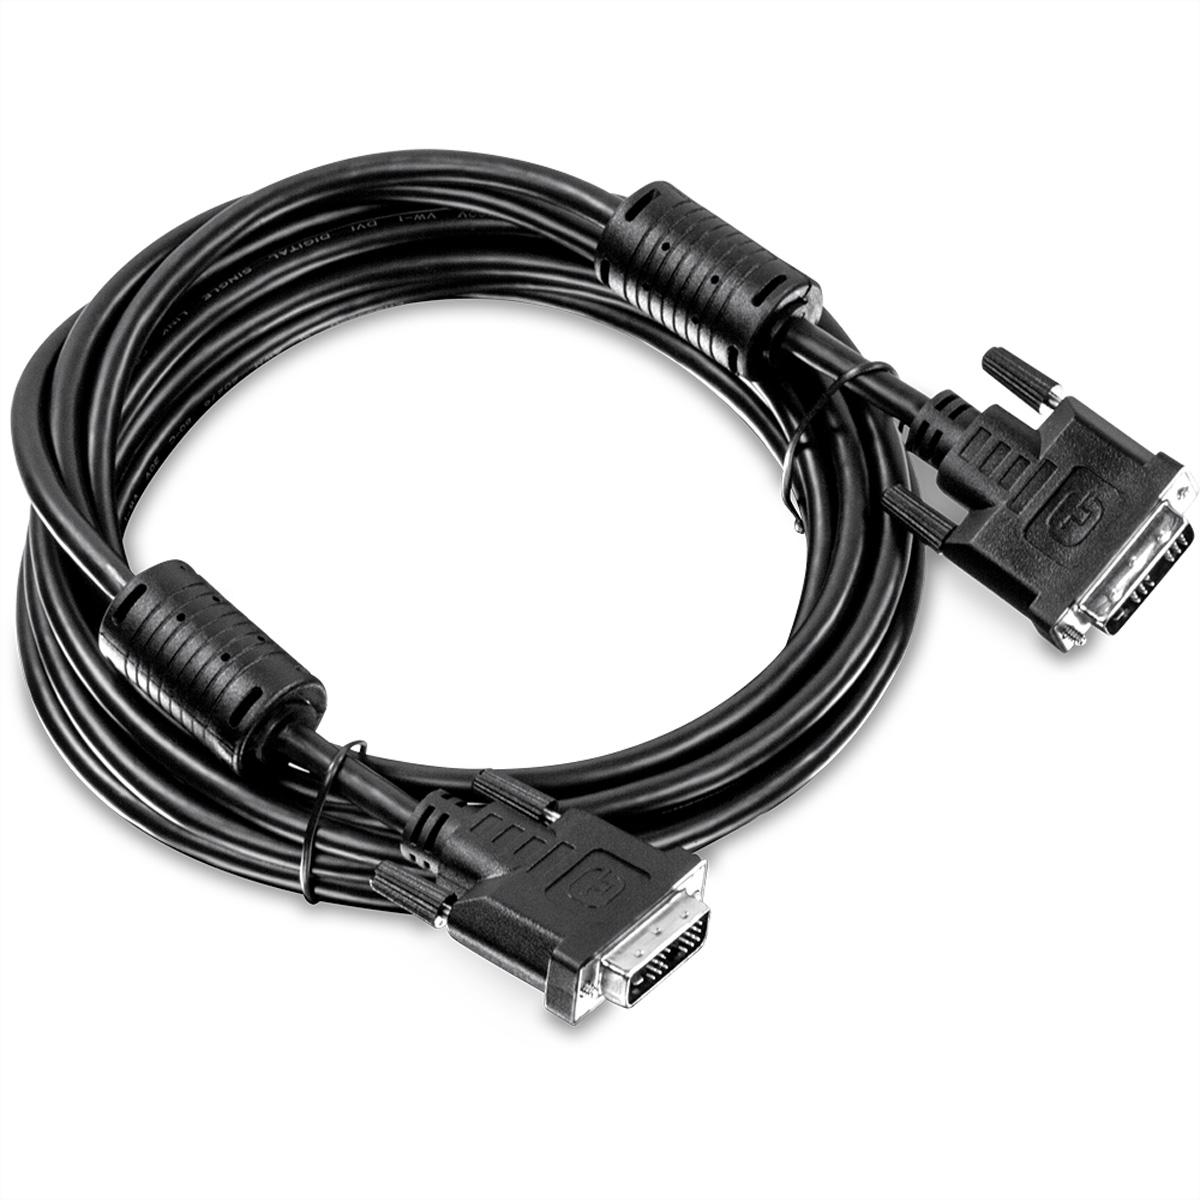 KVM TRENDNET m DVI-I Kit 4,5m Audio, 4,5 TK-CD15 Kabel KVM-Kabel, USB